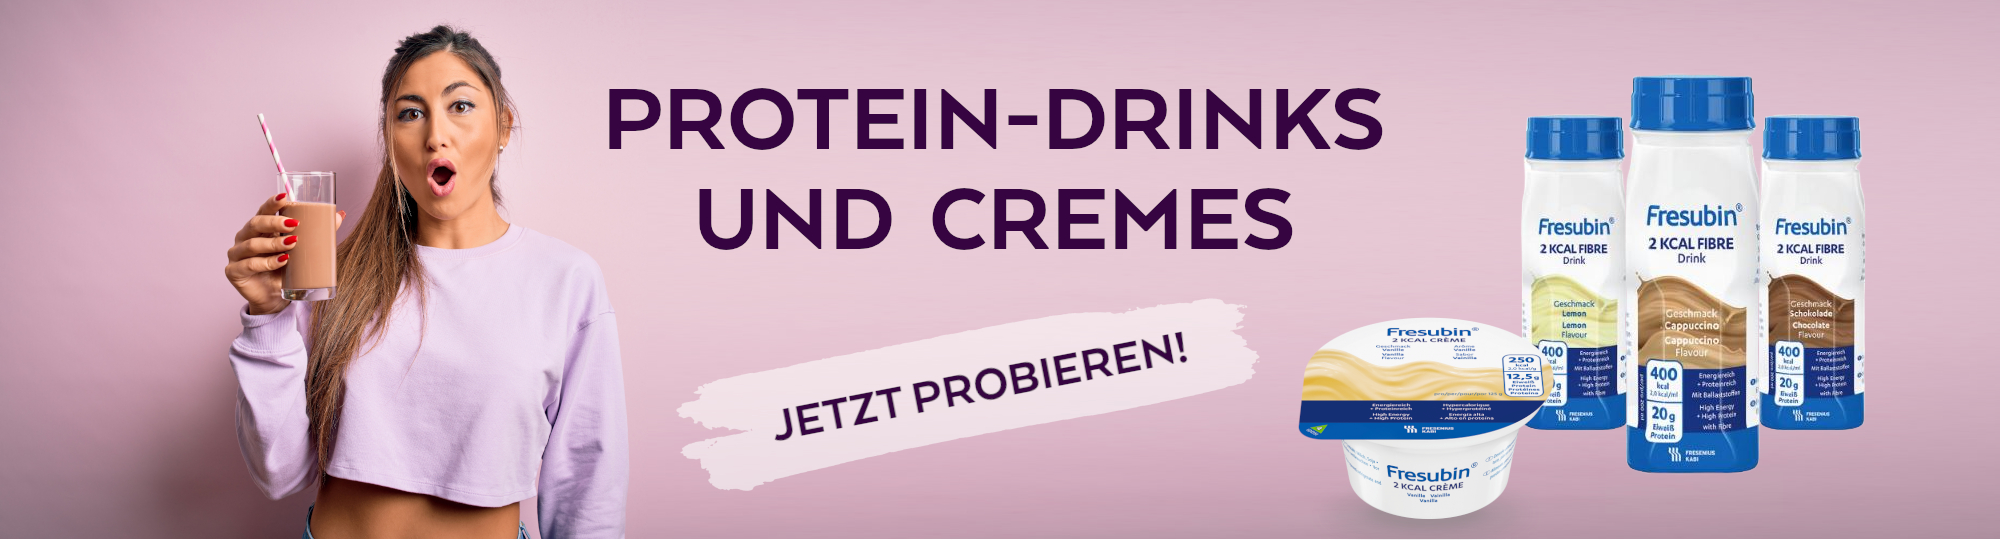 Protein-Drinks und Cremes